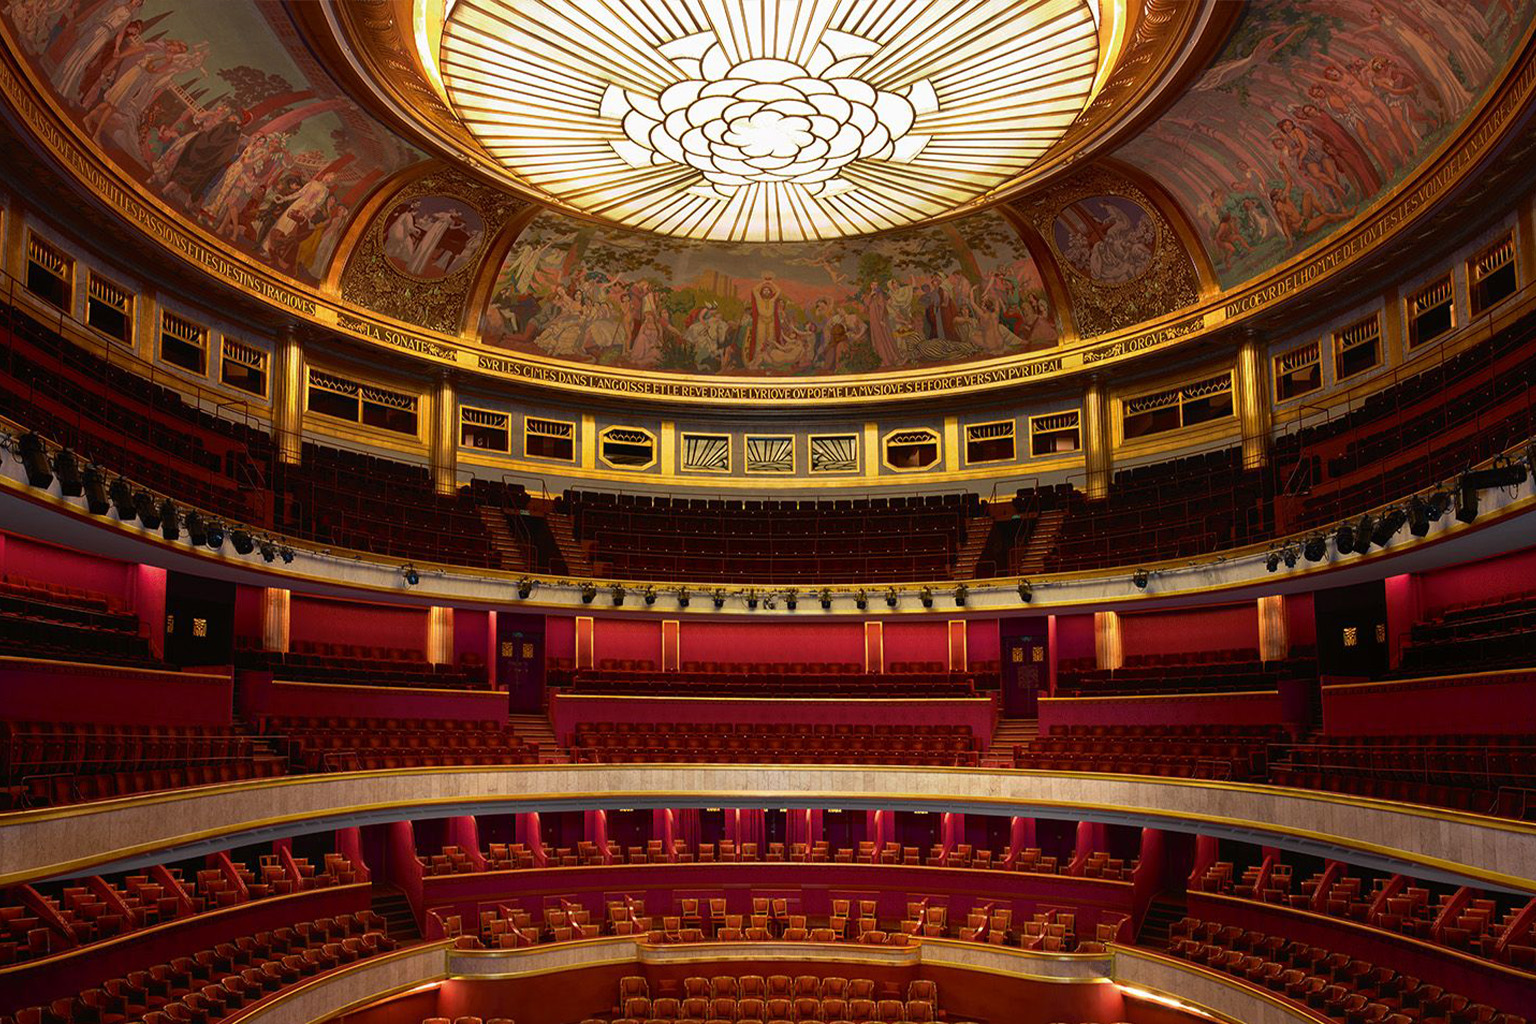 Théâtre des Champs-Élysées chamber music concert